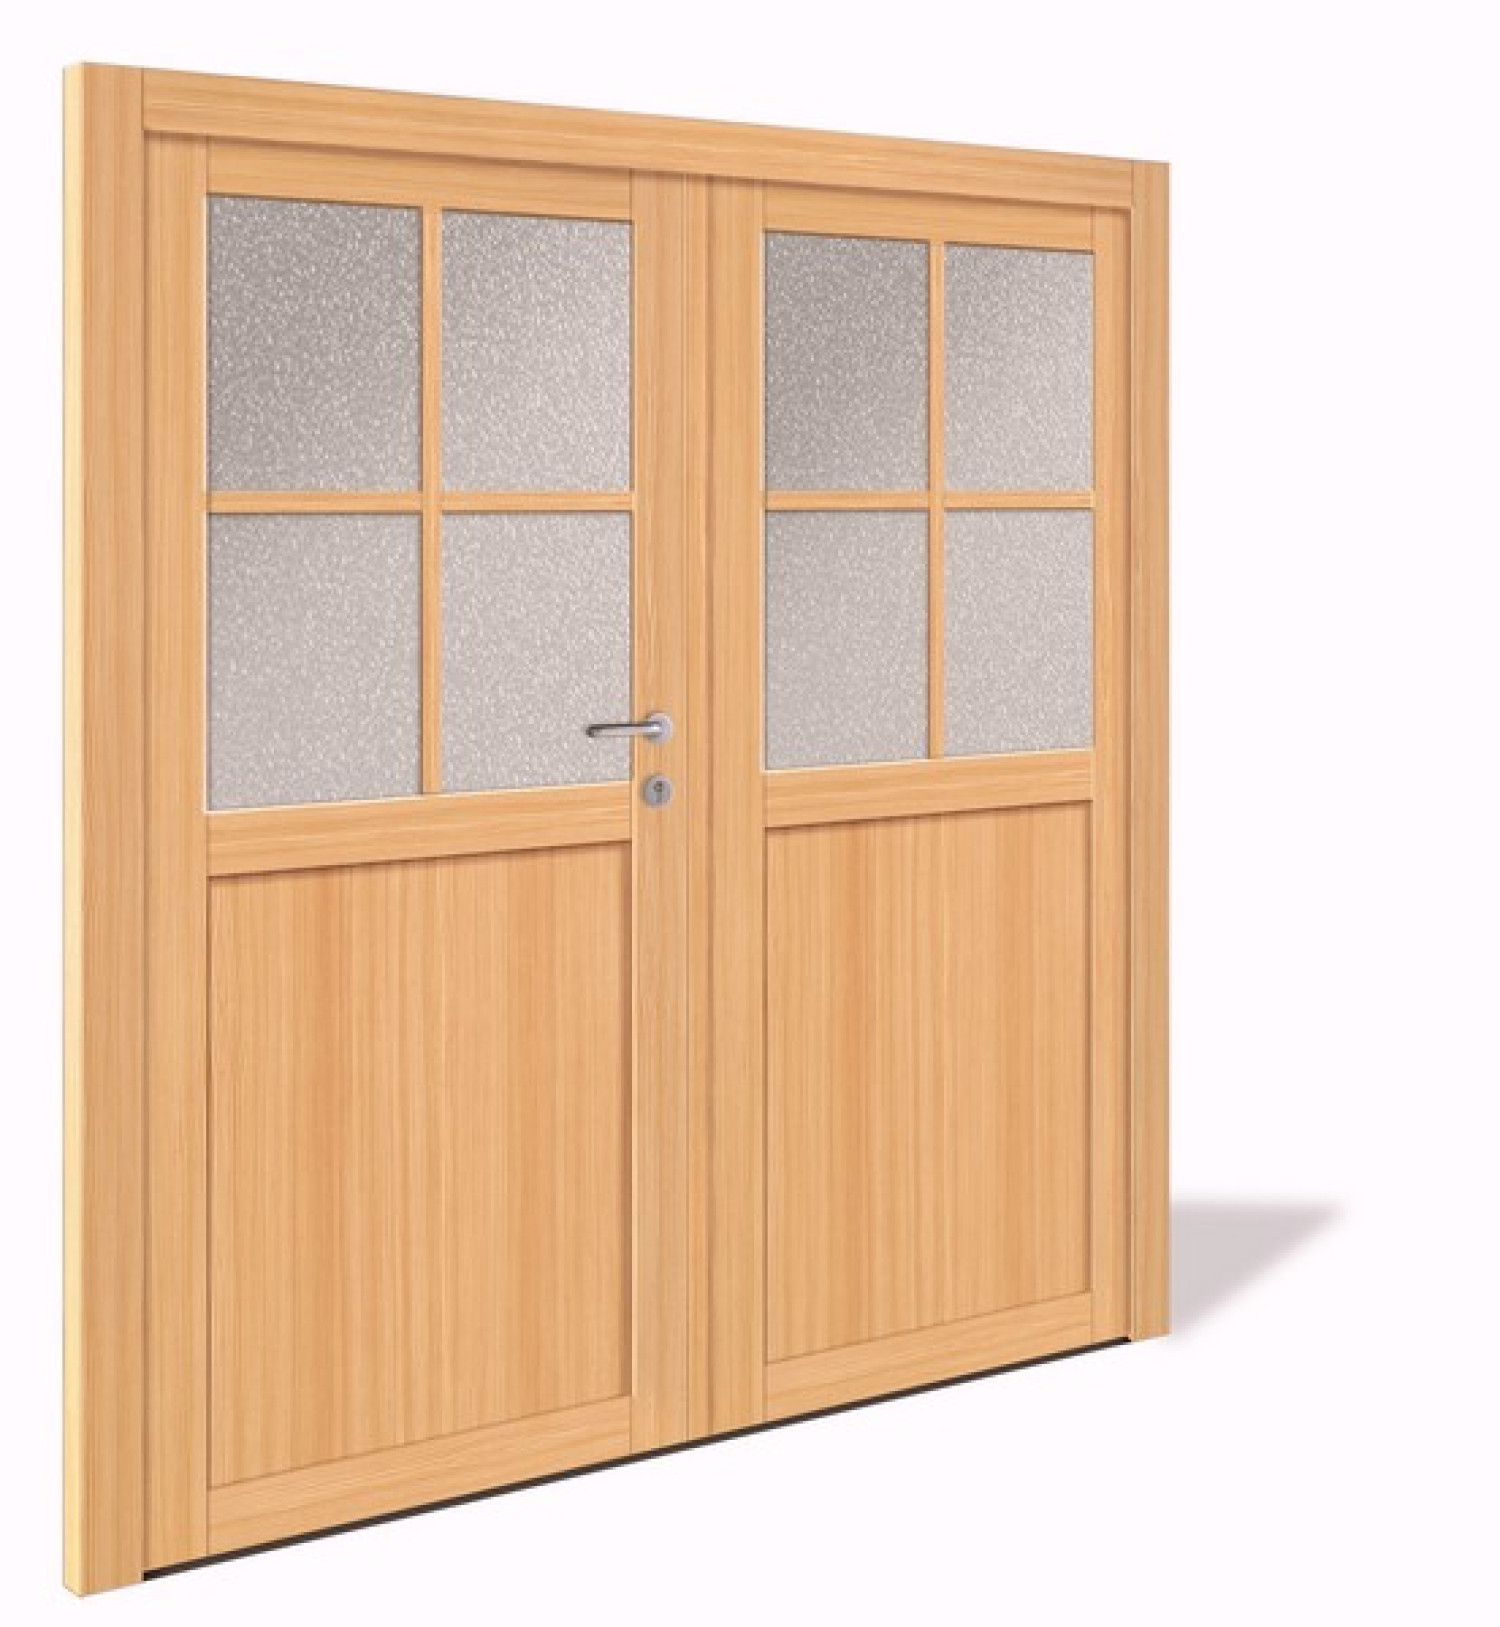 NET 1060-2 Holz Doppelflügel Nebeneingangstür mit Glasausschnitt - Interio